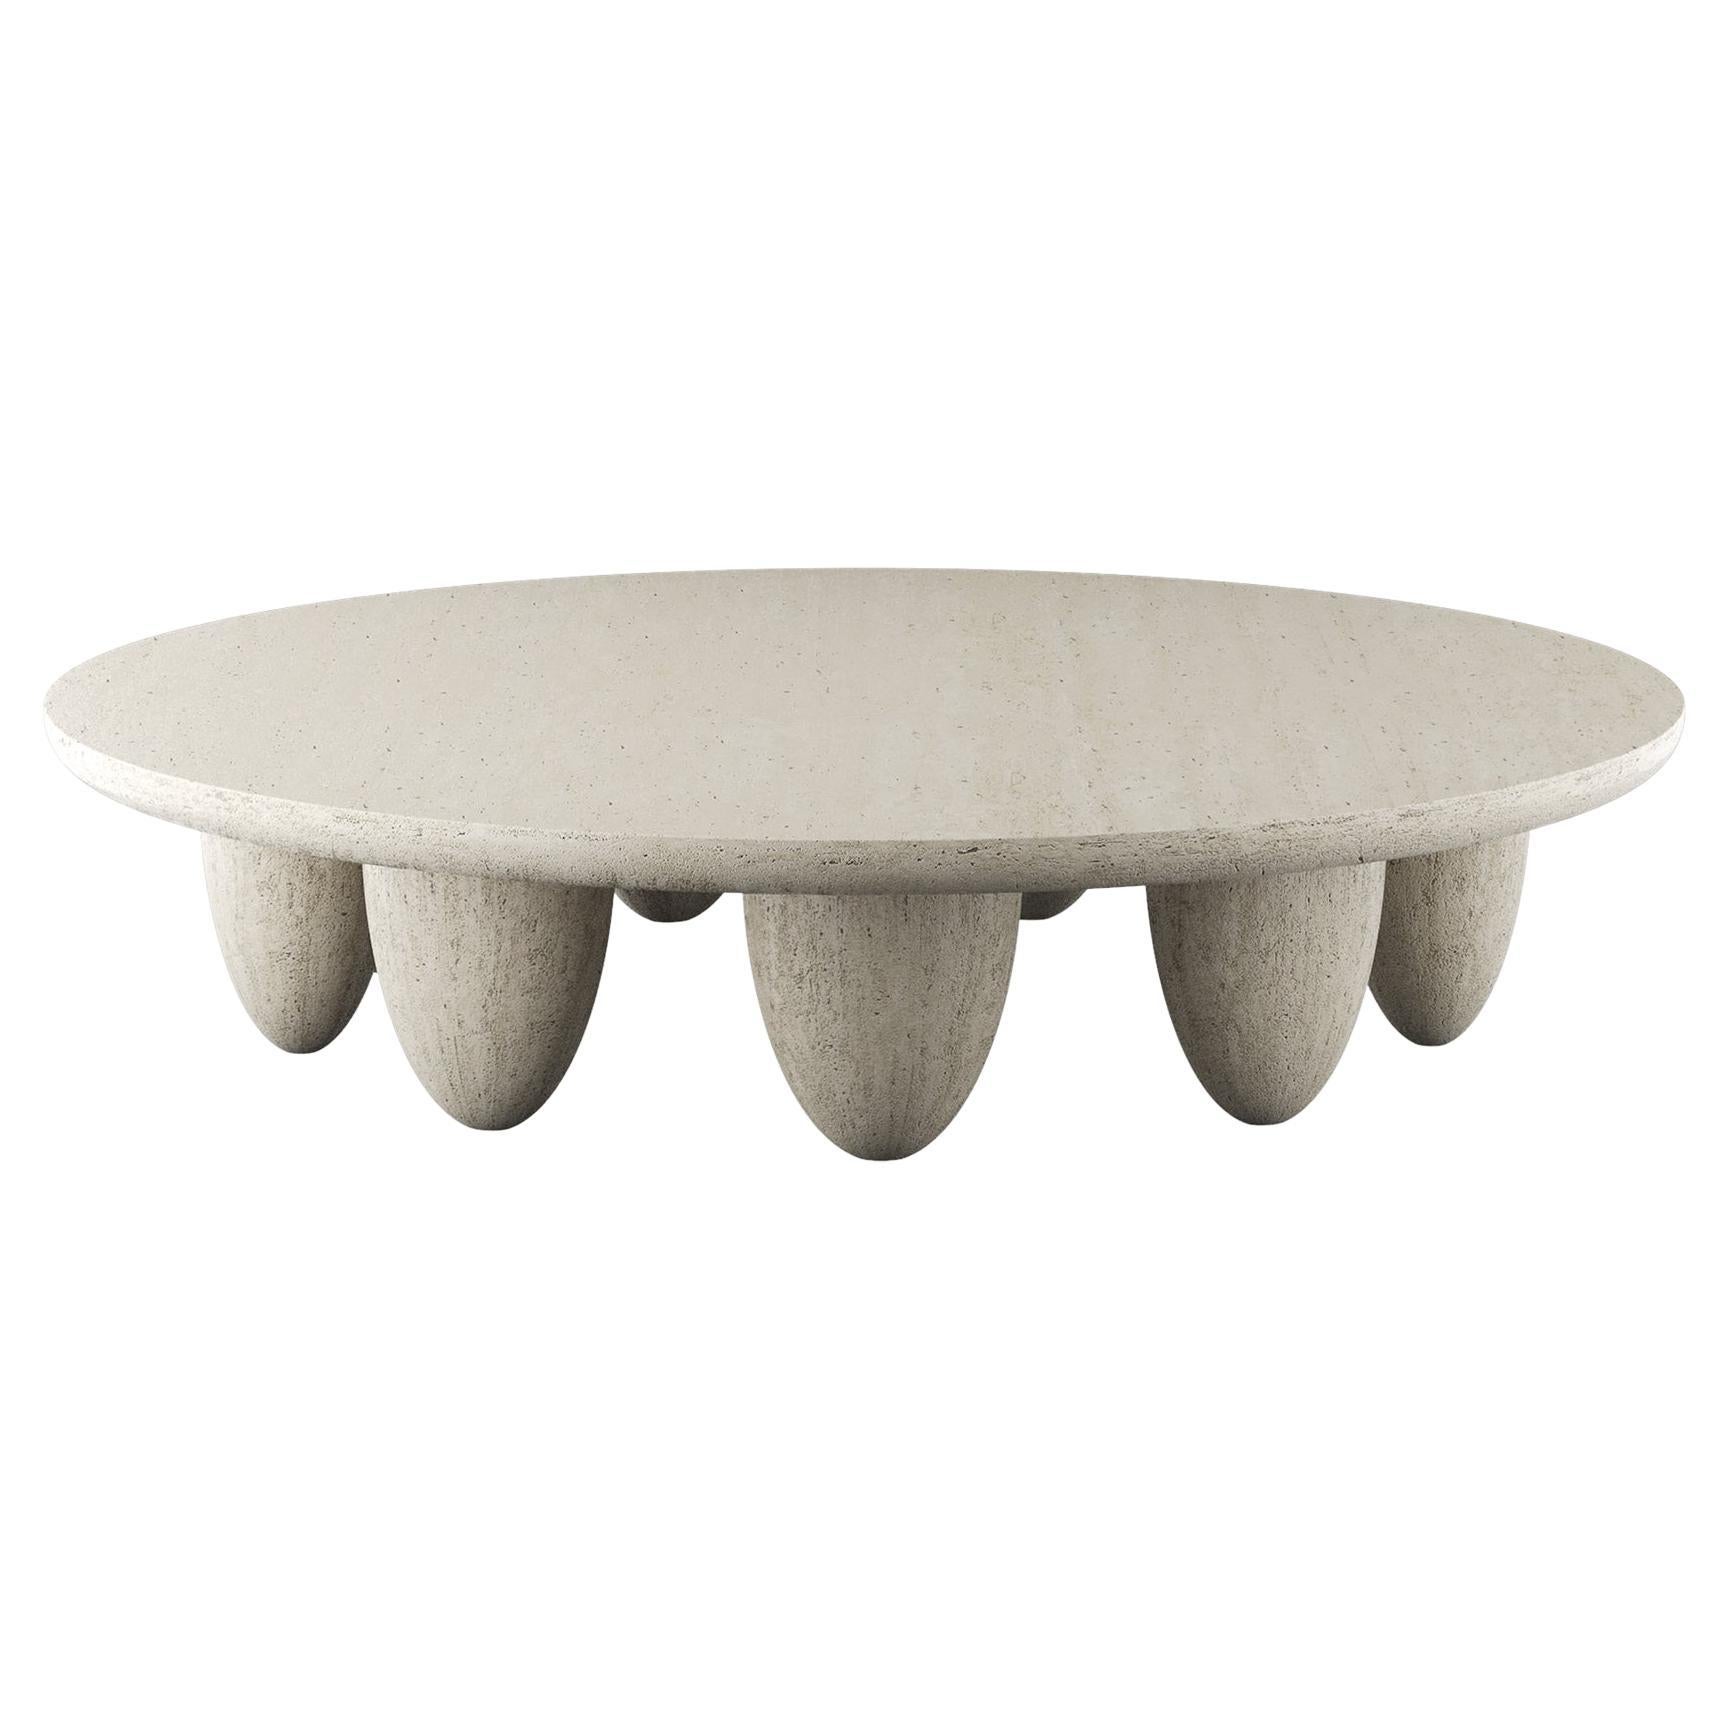 Table centrale ronde contemporaine minimaliste d'intérieur avec pieds en travertin